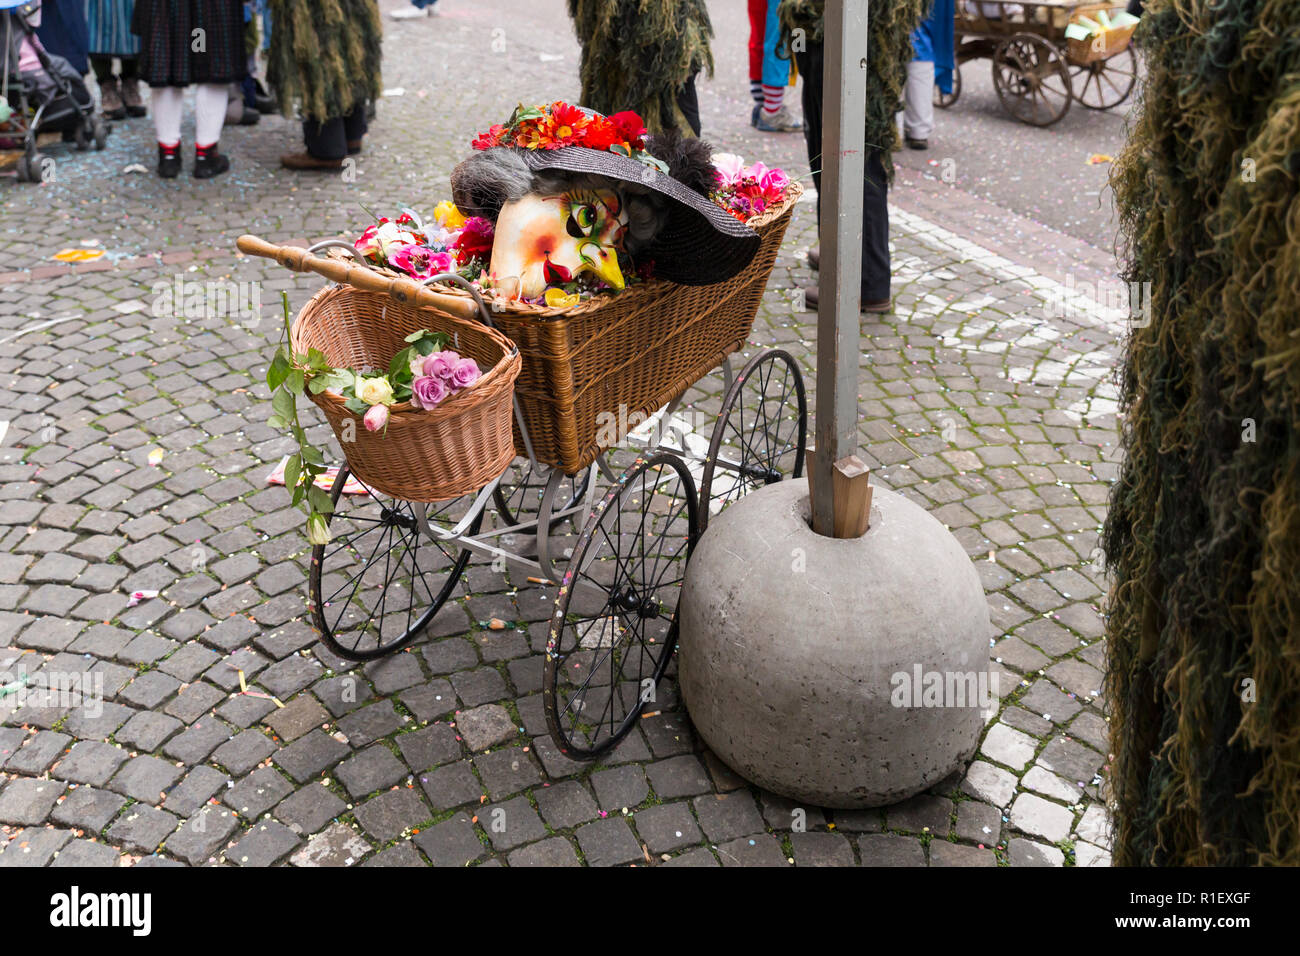 Carnaval de Bâle en 2018. Schneidergasse, Bâle, Suisse - Février 19th, 2018. Un ancien style baby buggy avec un masque de carnaval appartenant à un alti dande Banque D'Images